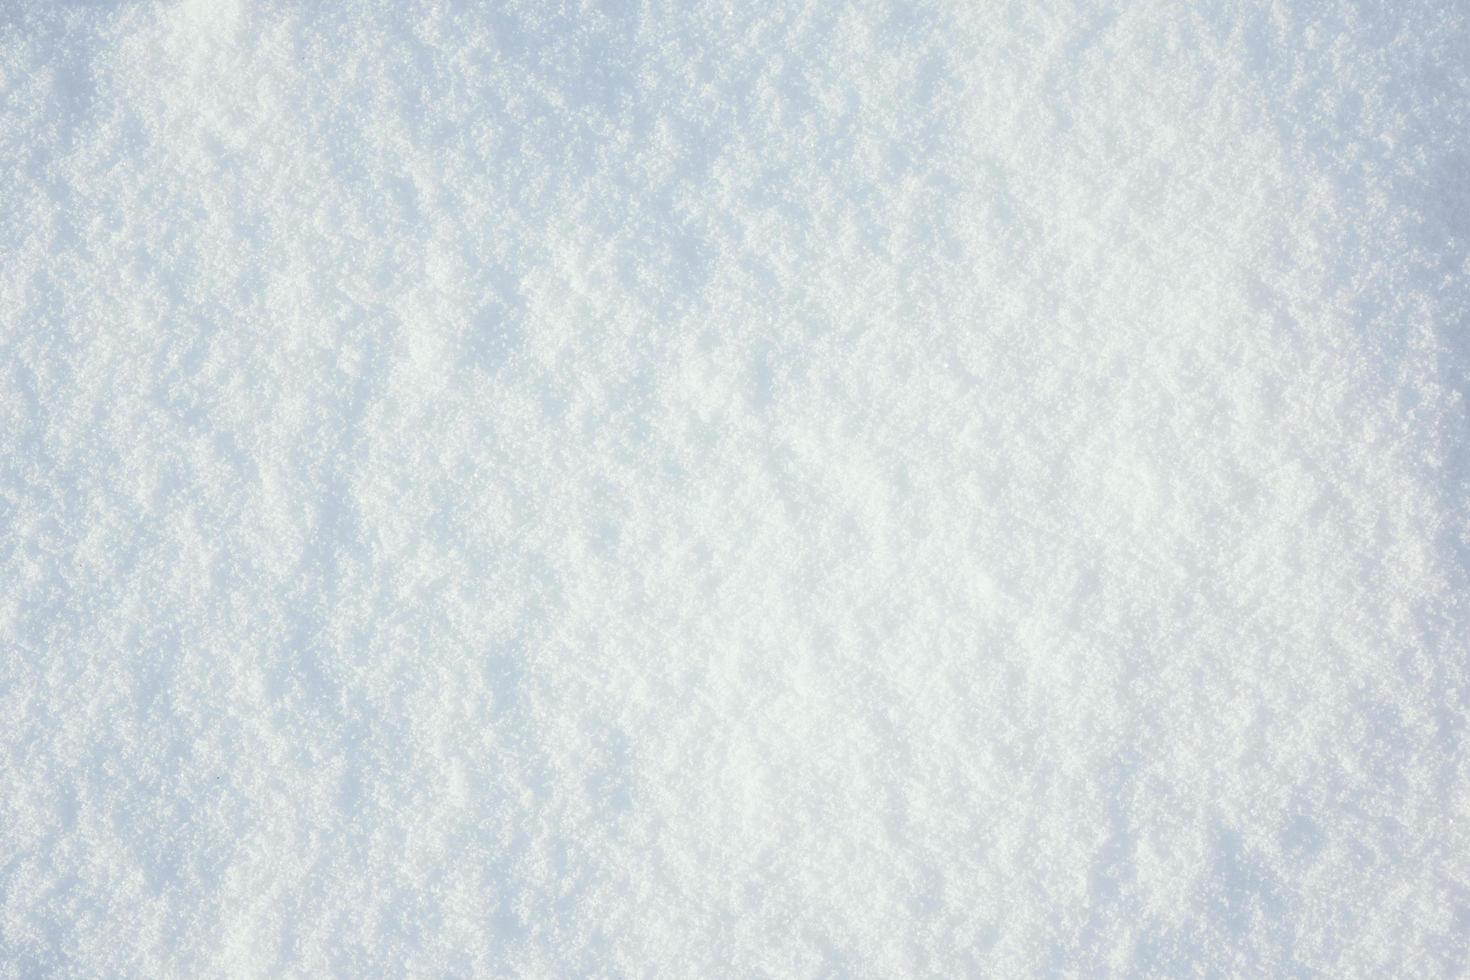 sfondo della trama di neve fredda bianca foto